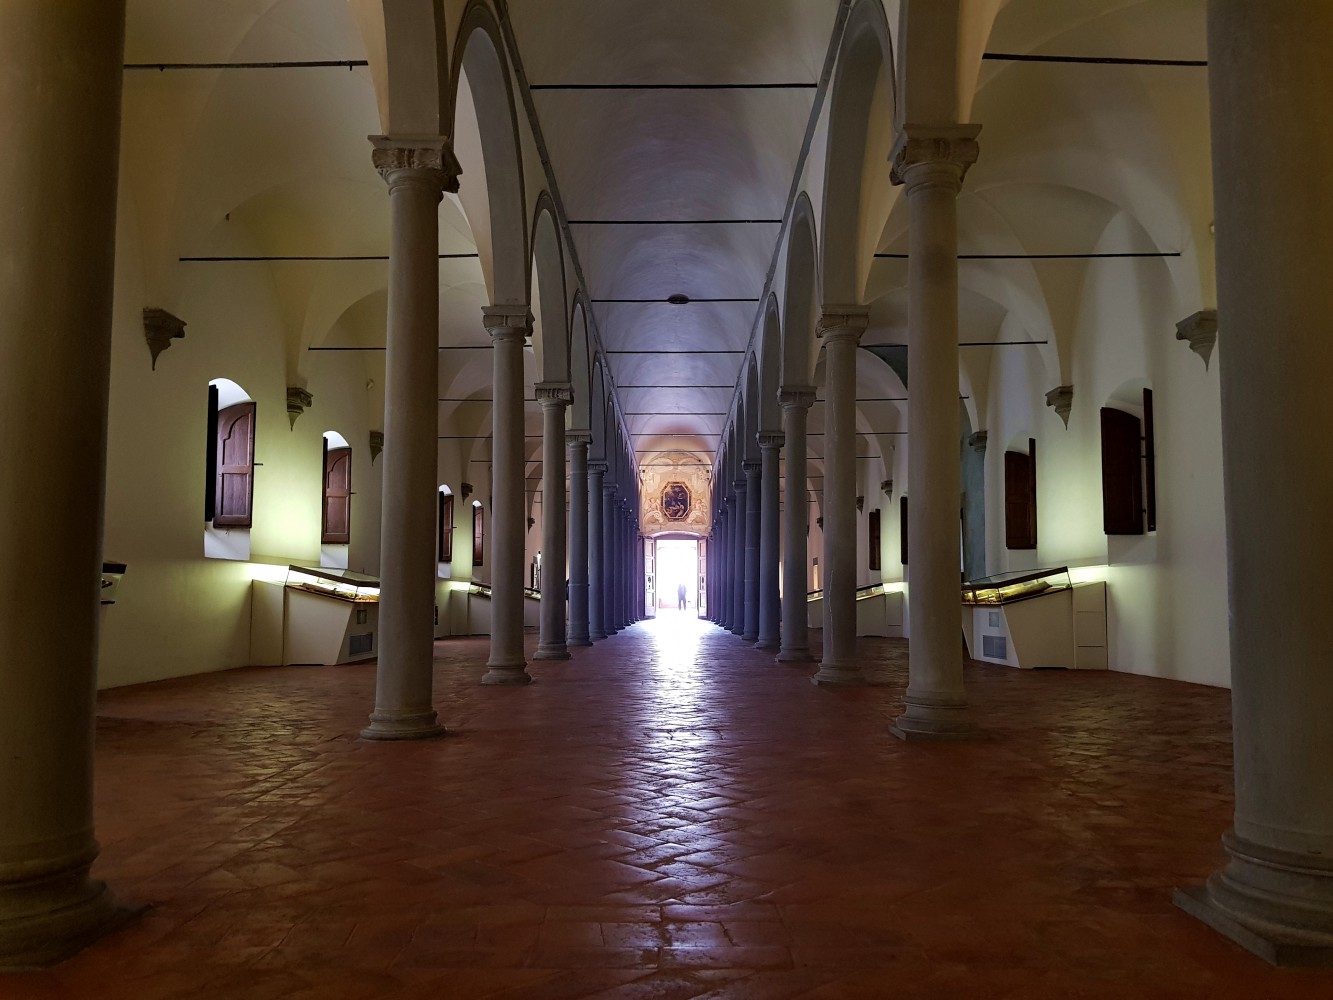 Le Couvent et le Musée National San Marco